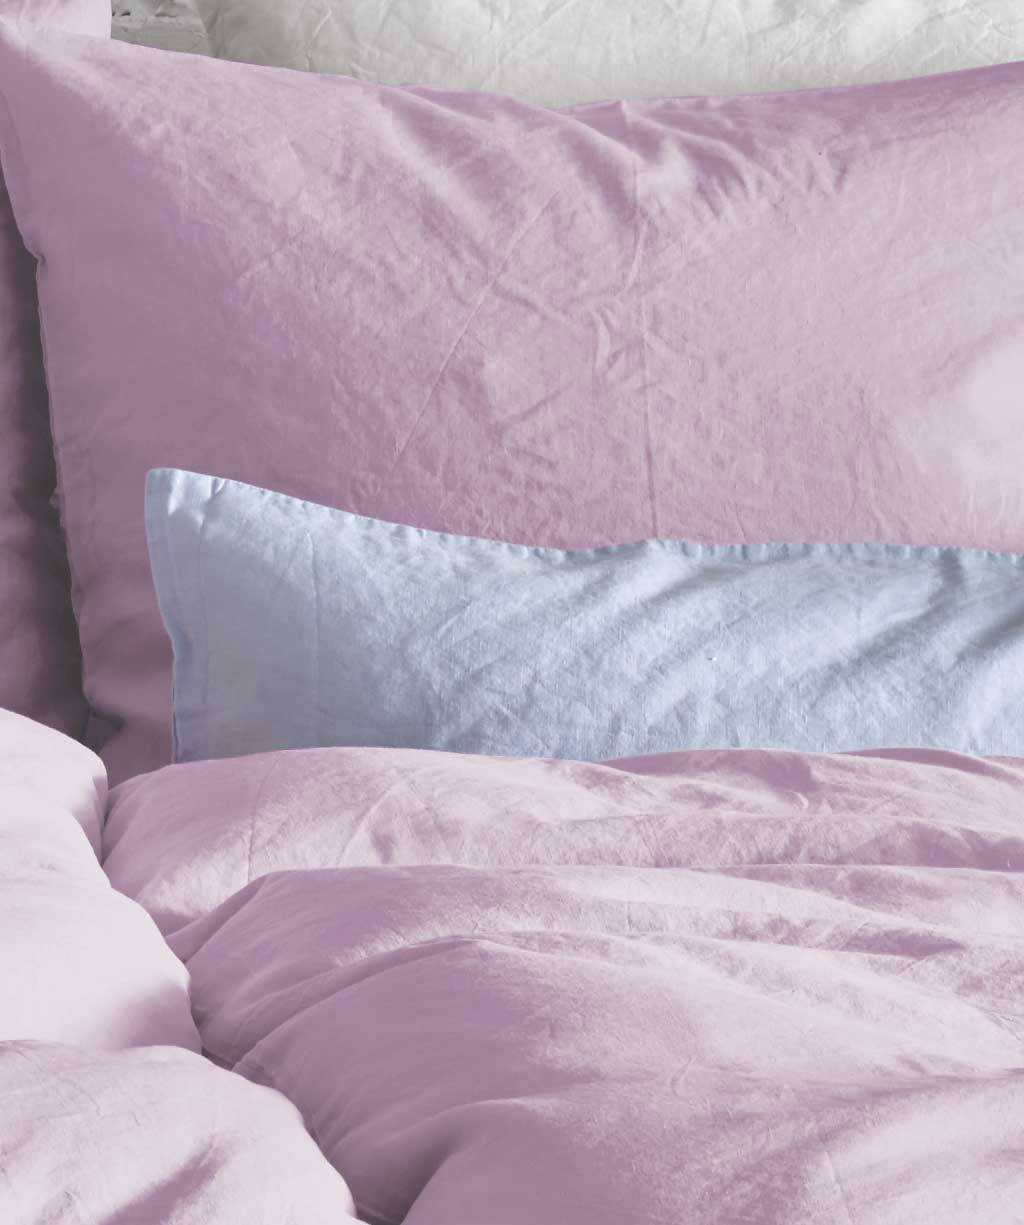 Leinen-Baumwoll Bettwäsche in lavendel - knittern erlaubt